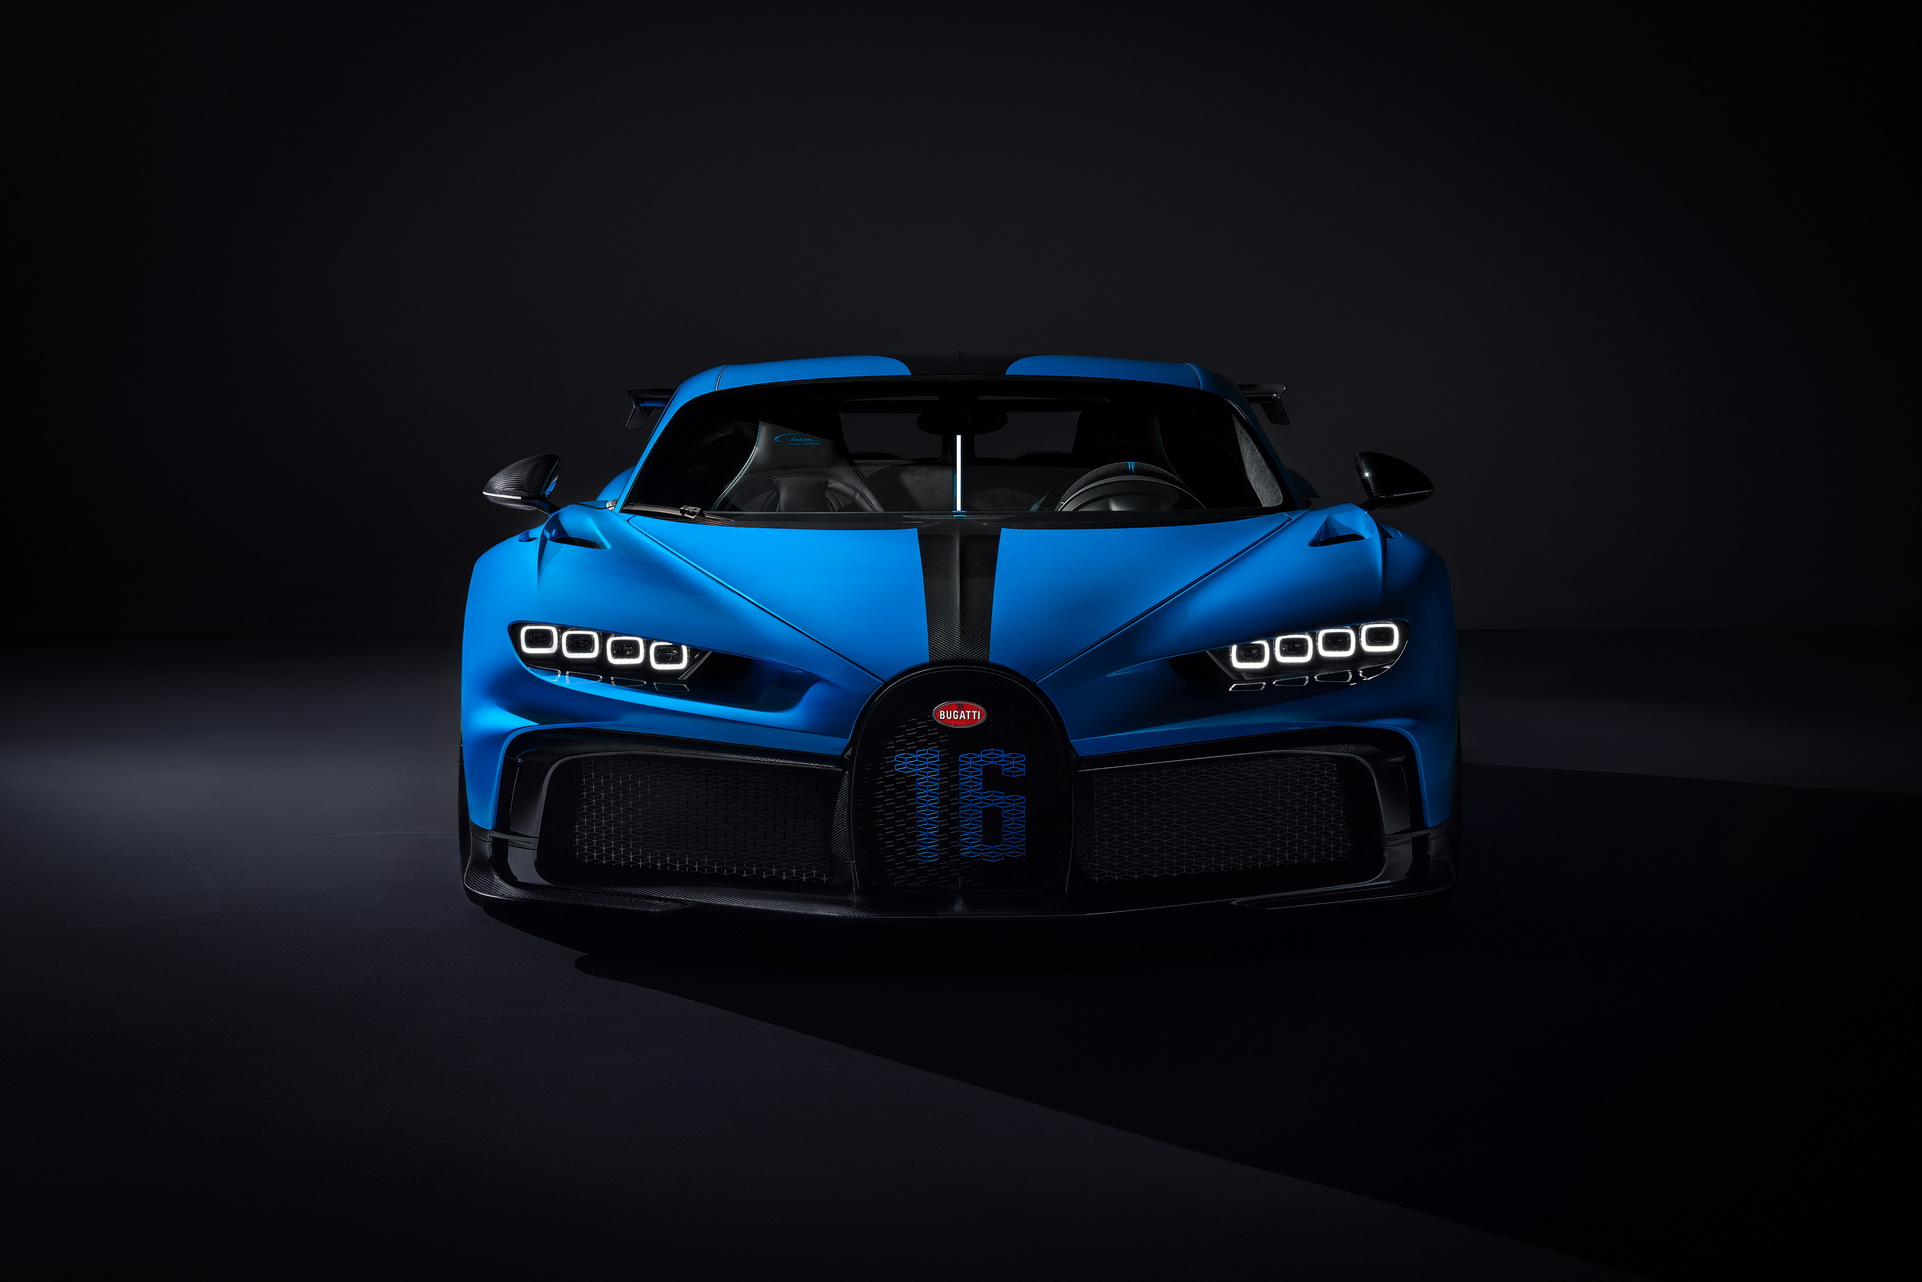 Bạn muốn ngắm nhìn vẻ đẹp hoàn hảo của siêu xe Bugatti Chiron Pur Sport? Hãy dành thời gian để chiêm ngưỡng hình ảnh siêu xe này với thiết kế tinh tế và đầy ấn tượng. Khám phá các chi tiết trong từng đường nét của xe và cảm nhận sự hoàn hảo từng centimet của Bugatti Chiron Pur Sport.